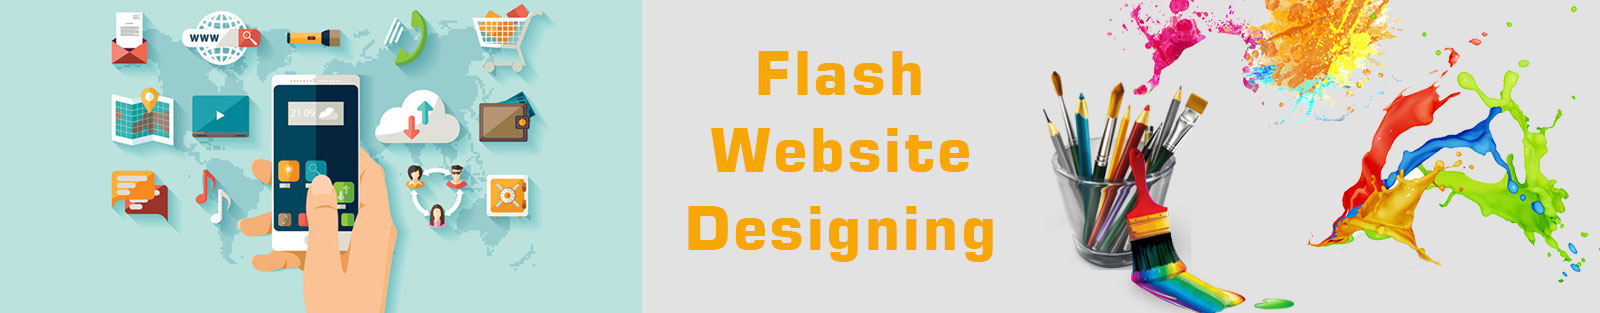 Flash Website Designing